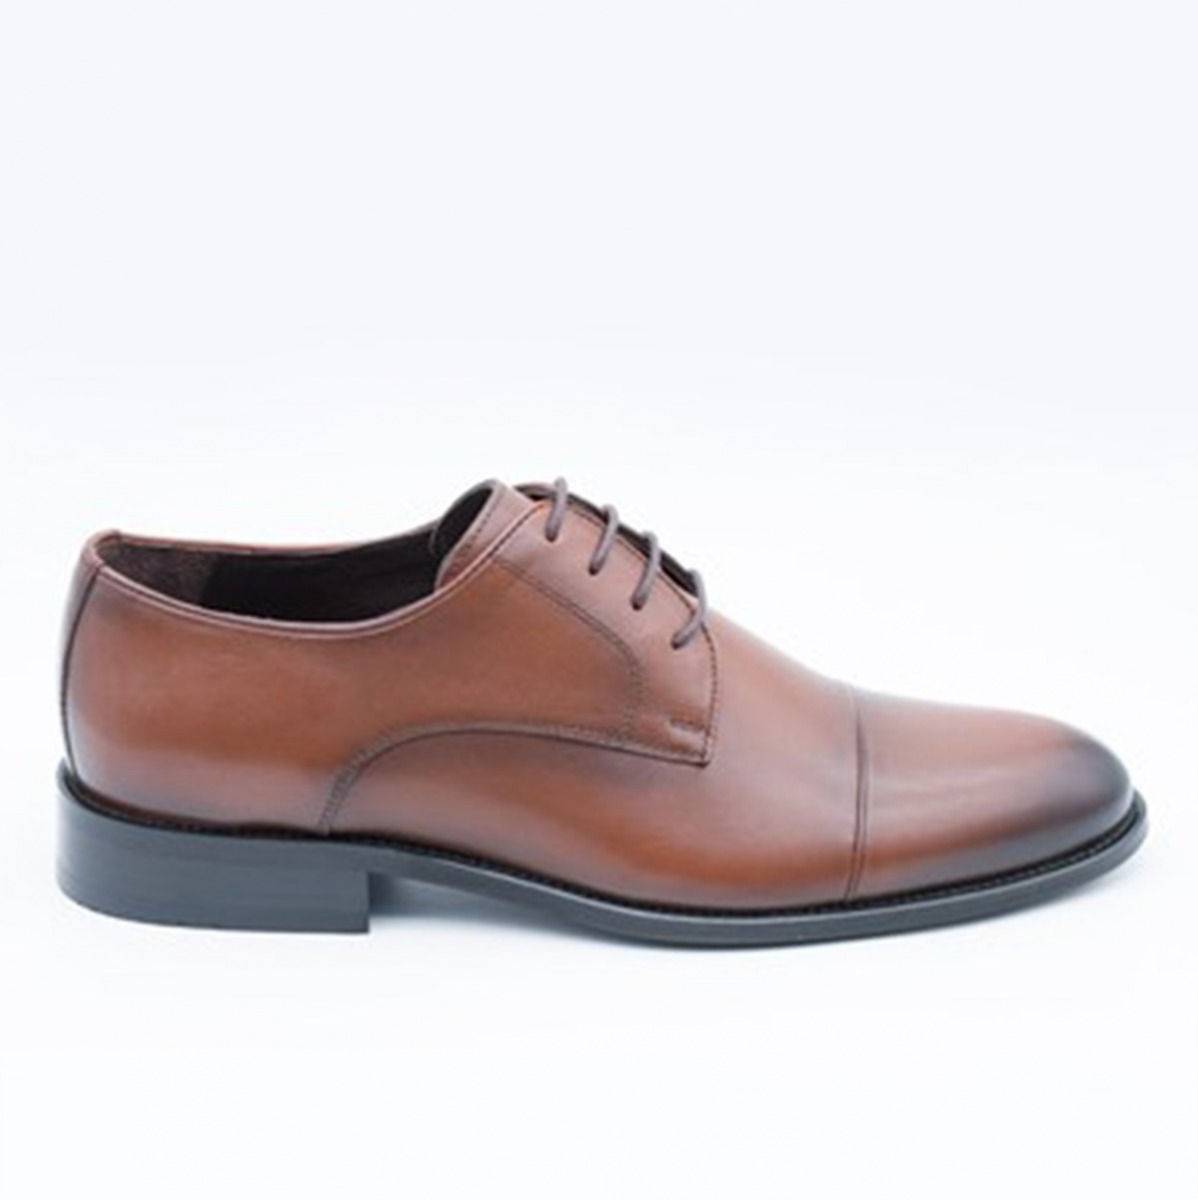 Flo Erkek Deri Klasik Ayakkabı İ17523-4 M 1000 TABA. 3